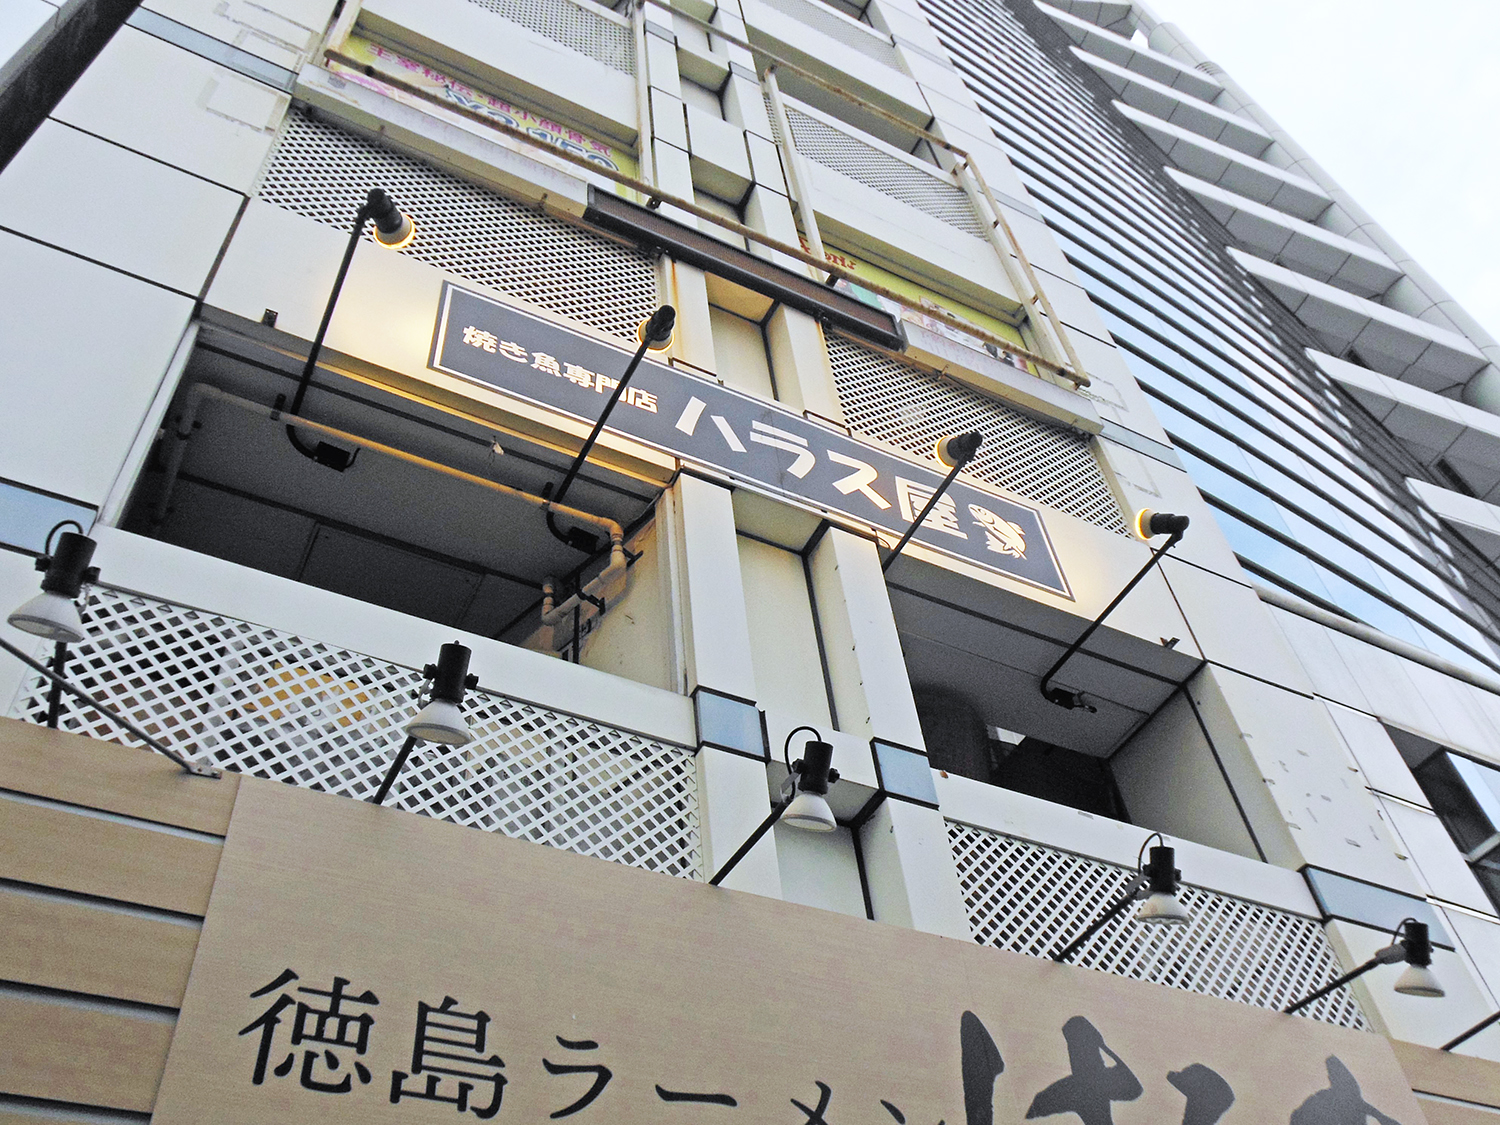 右手に宝塚大学、左手に河合塾がある間の雑居ビル。1階は徳島ラーメンの店。